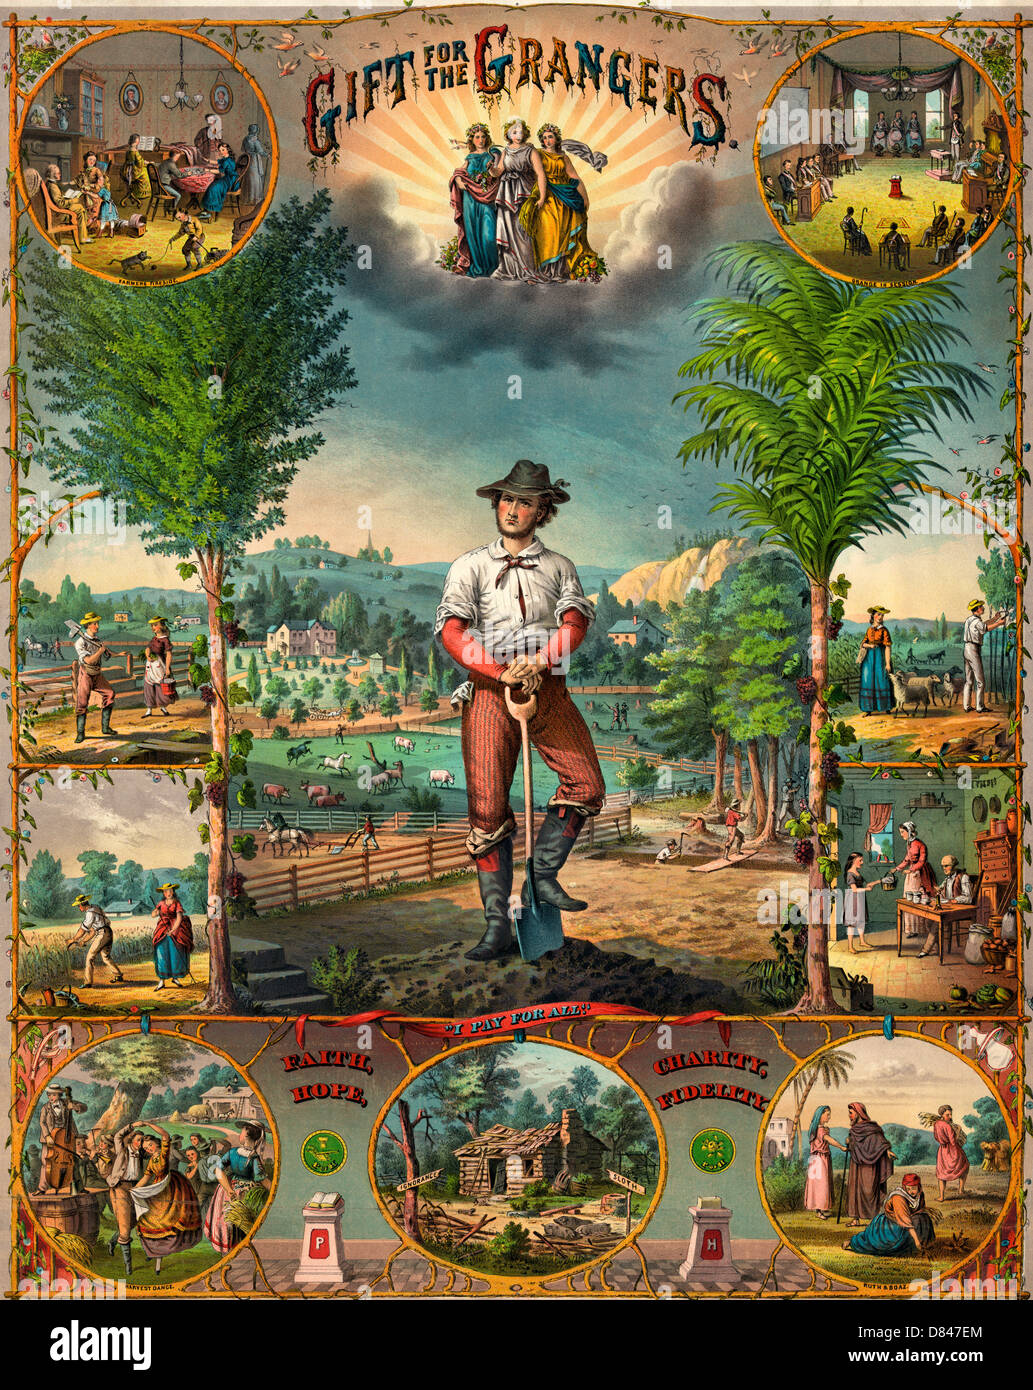 Regalo per i grangers - stampa promozionale per Grange membri raffiguranti scene di allevamento e della vita agricola, circa 1873 Foto Stock